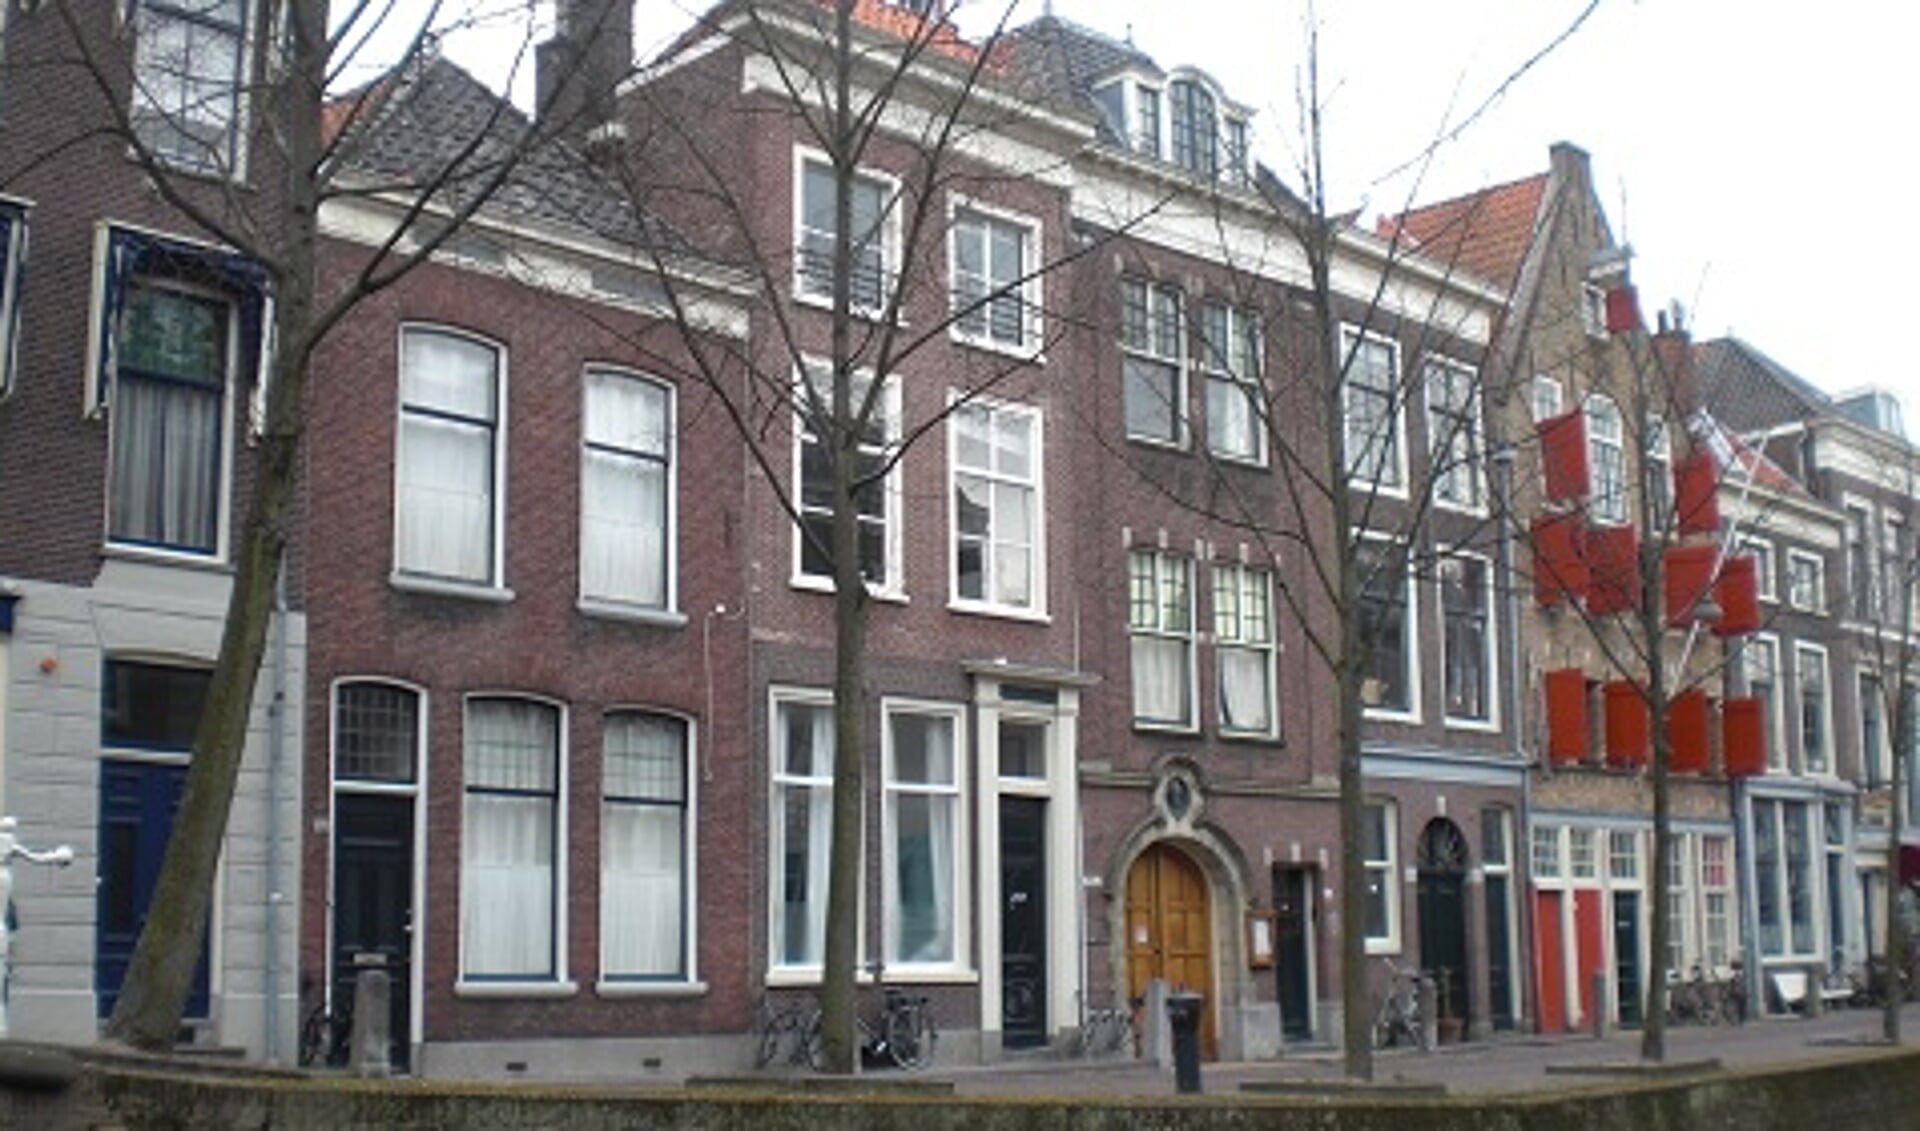 Het gezin Spoors heeft zowel aan de oost- als de westzijde van de Oude Delft gewoond.
Net ten noorden van de Binnenwatersloot. (Foto: J.W.Stolk)